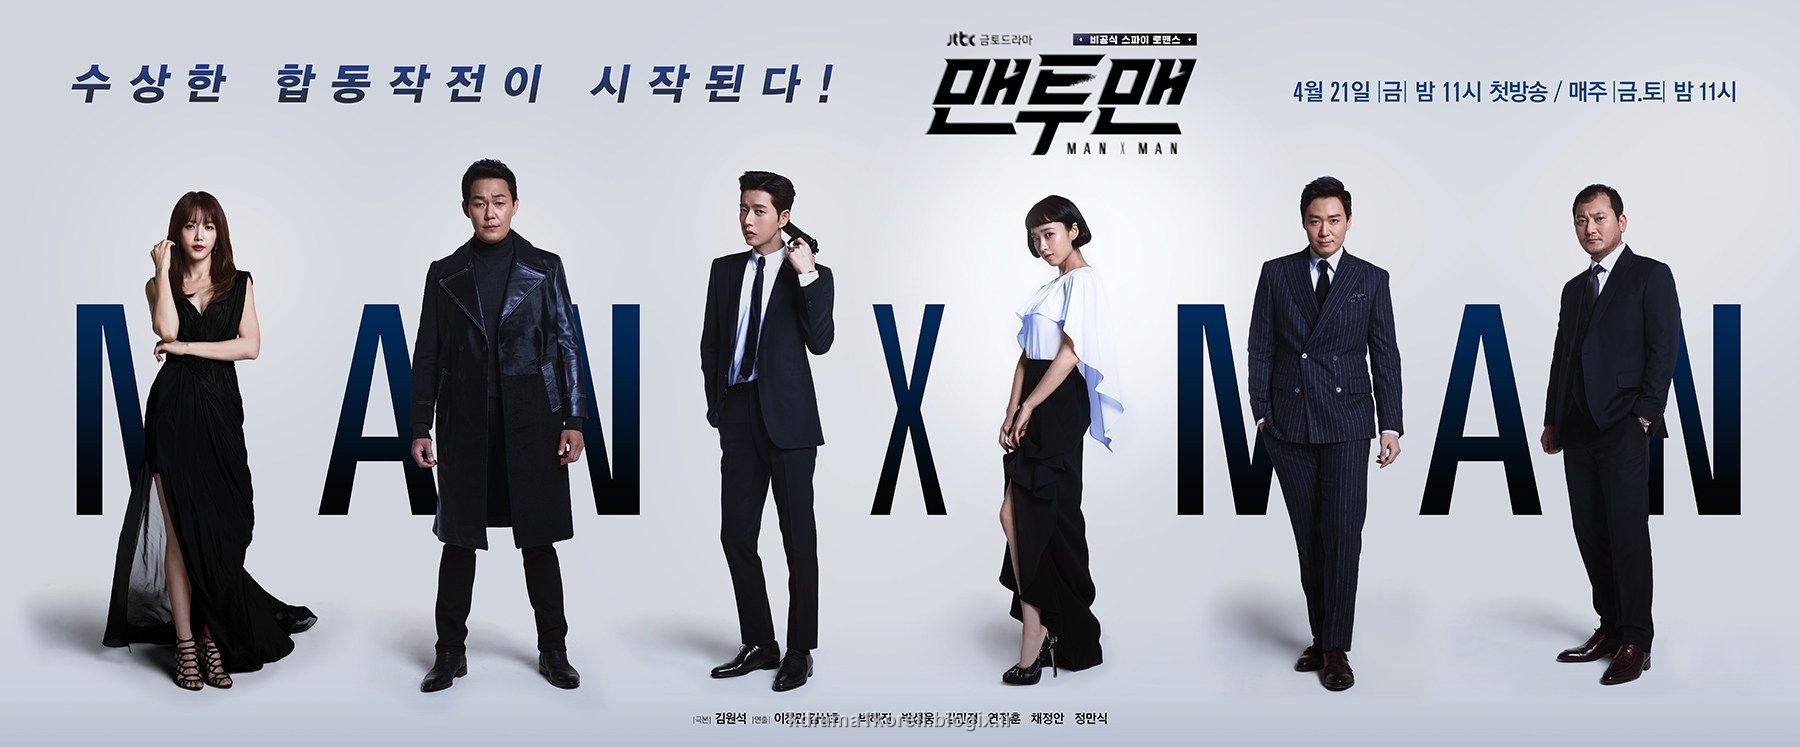 سریال کره ای مرد و مردونه(men to men)